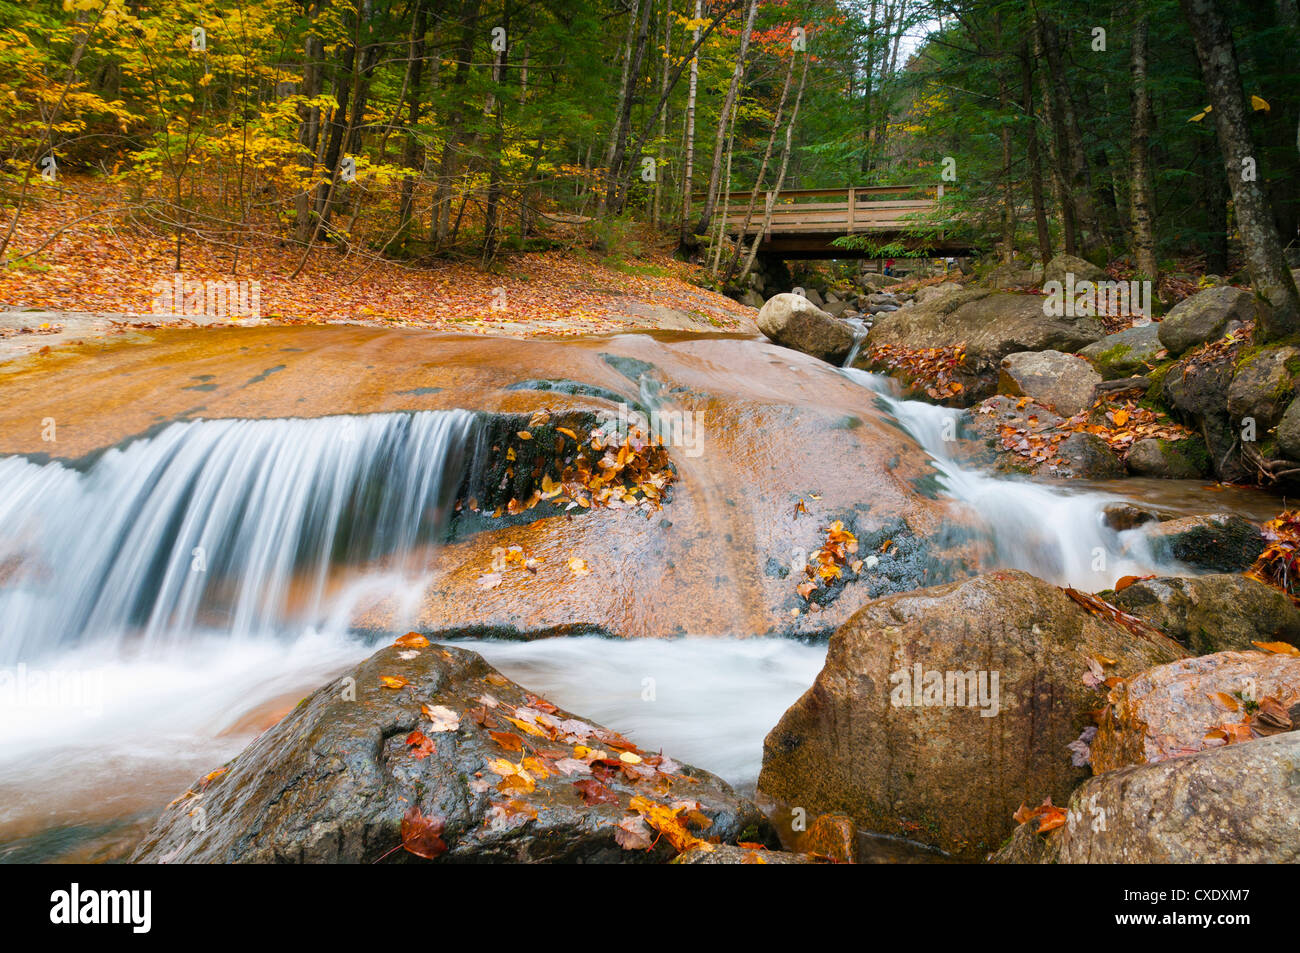 Franconia Notch State Park, New Hampshire, New England, États-Unis d'Amérique, Amérique du Nord Banque D'Images